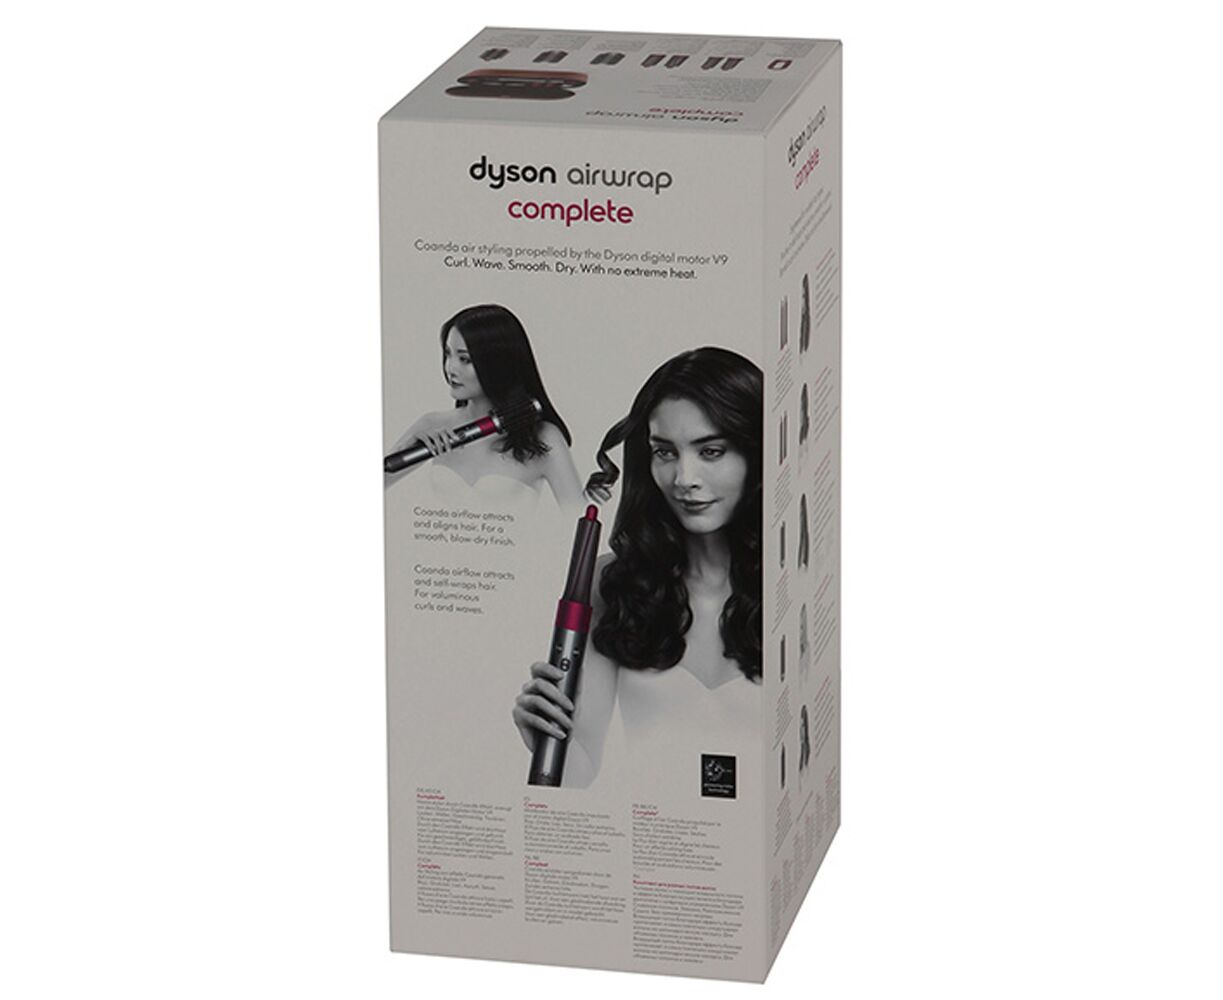 Купить стайлер для волос дайсон в москве. Фен-стайлер Dyson Airwrap complete. Фен-щетка Dyson hs01 Airwrap. Стайлер Dyson Airwrap hs01 complete. Мультистайлер Dyson Airwrap hs01.